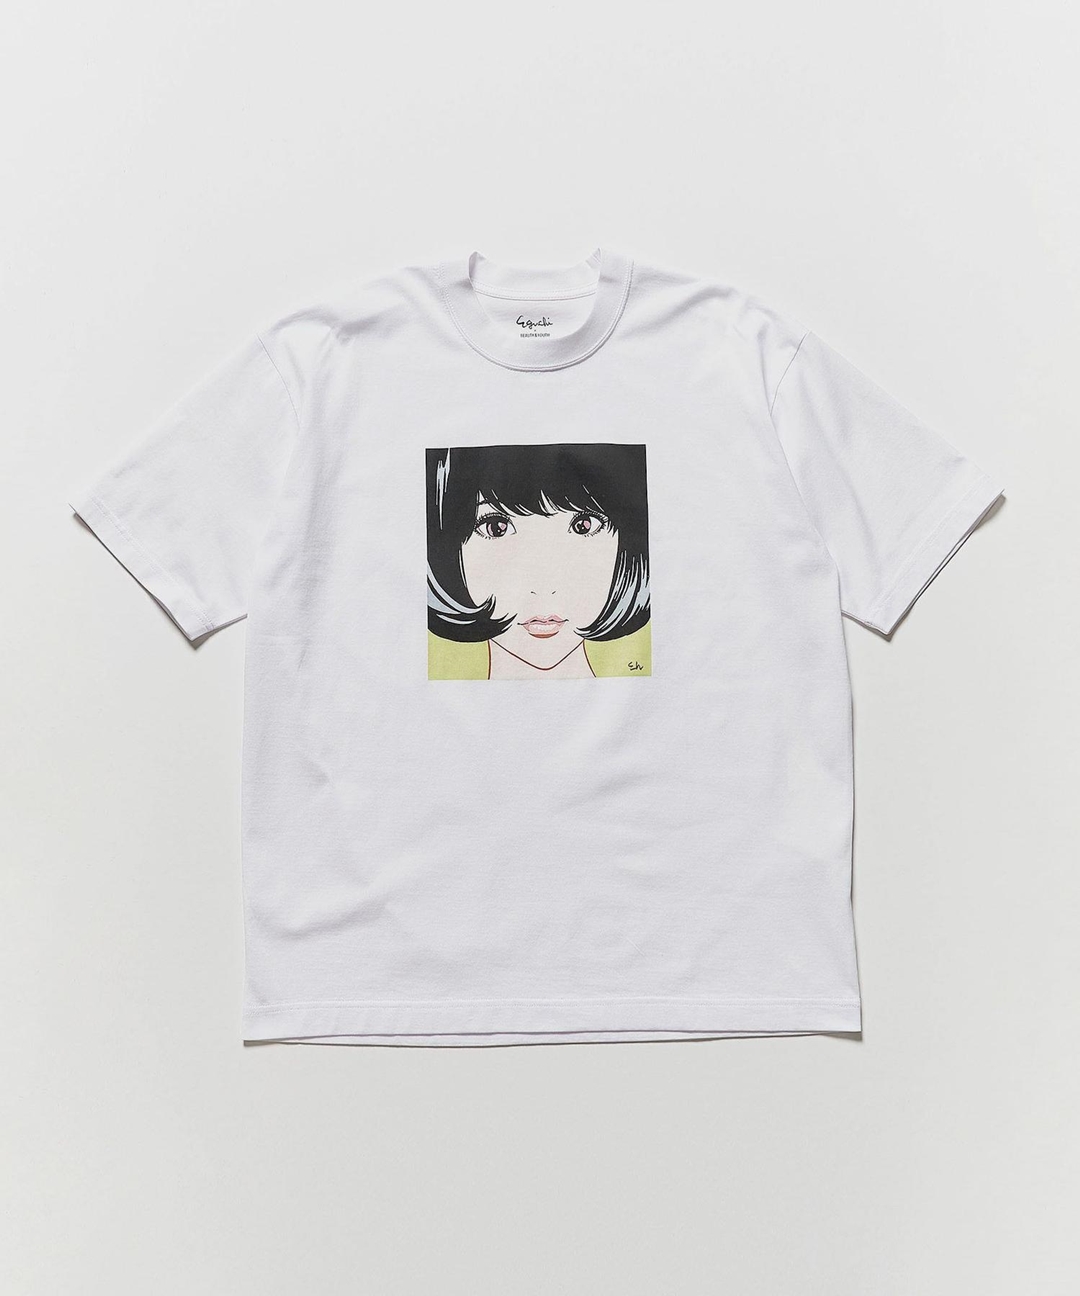 江口寿史 × BEAUTY&YOUTH 「彼女」」シリーズからのアーカイブをプリントした「KANOJO TEE/Tシャツ」が4月中旬発売 (ビューティアンドユース)